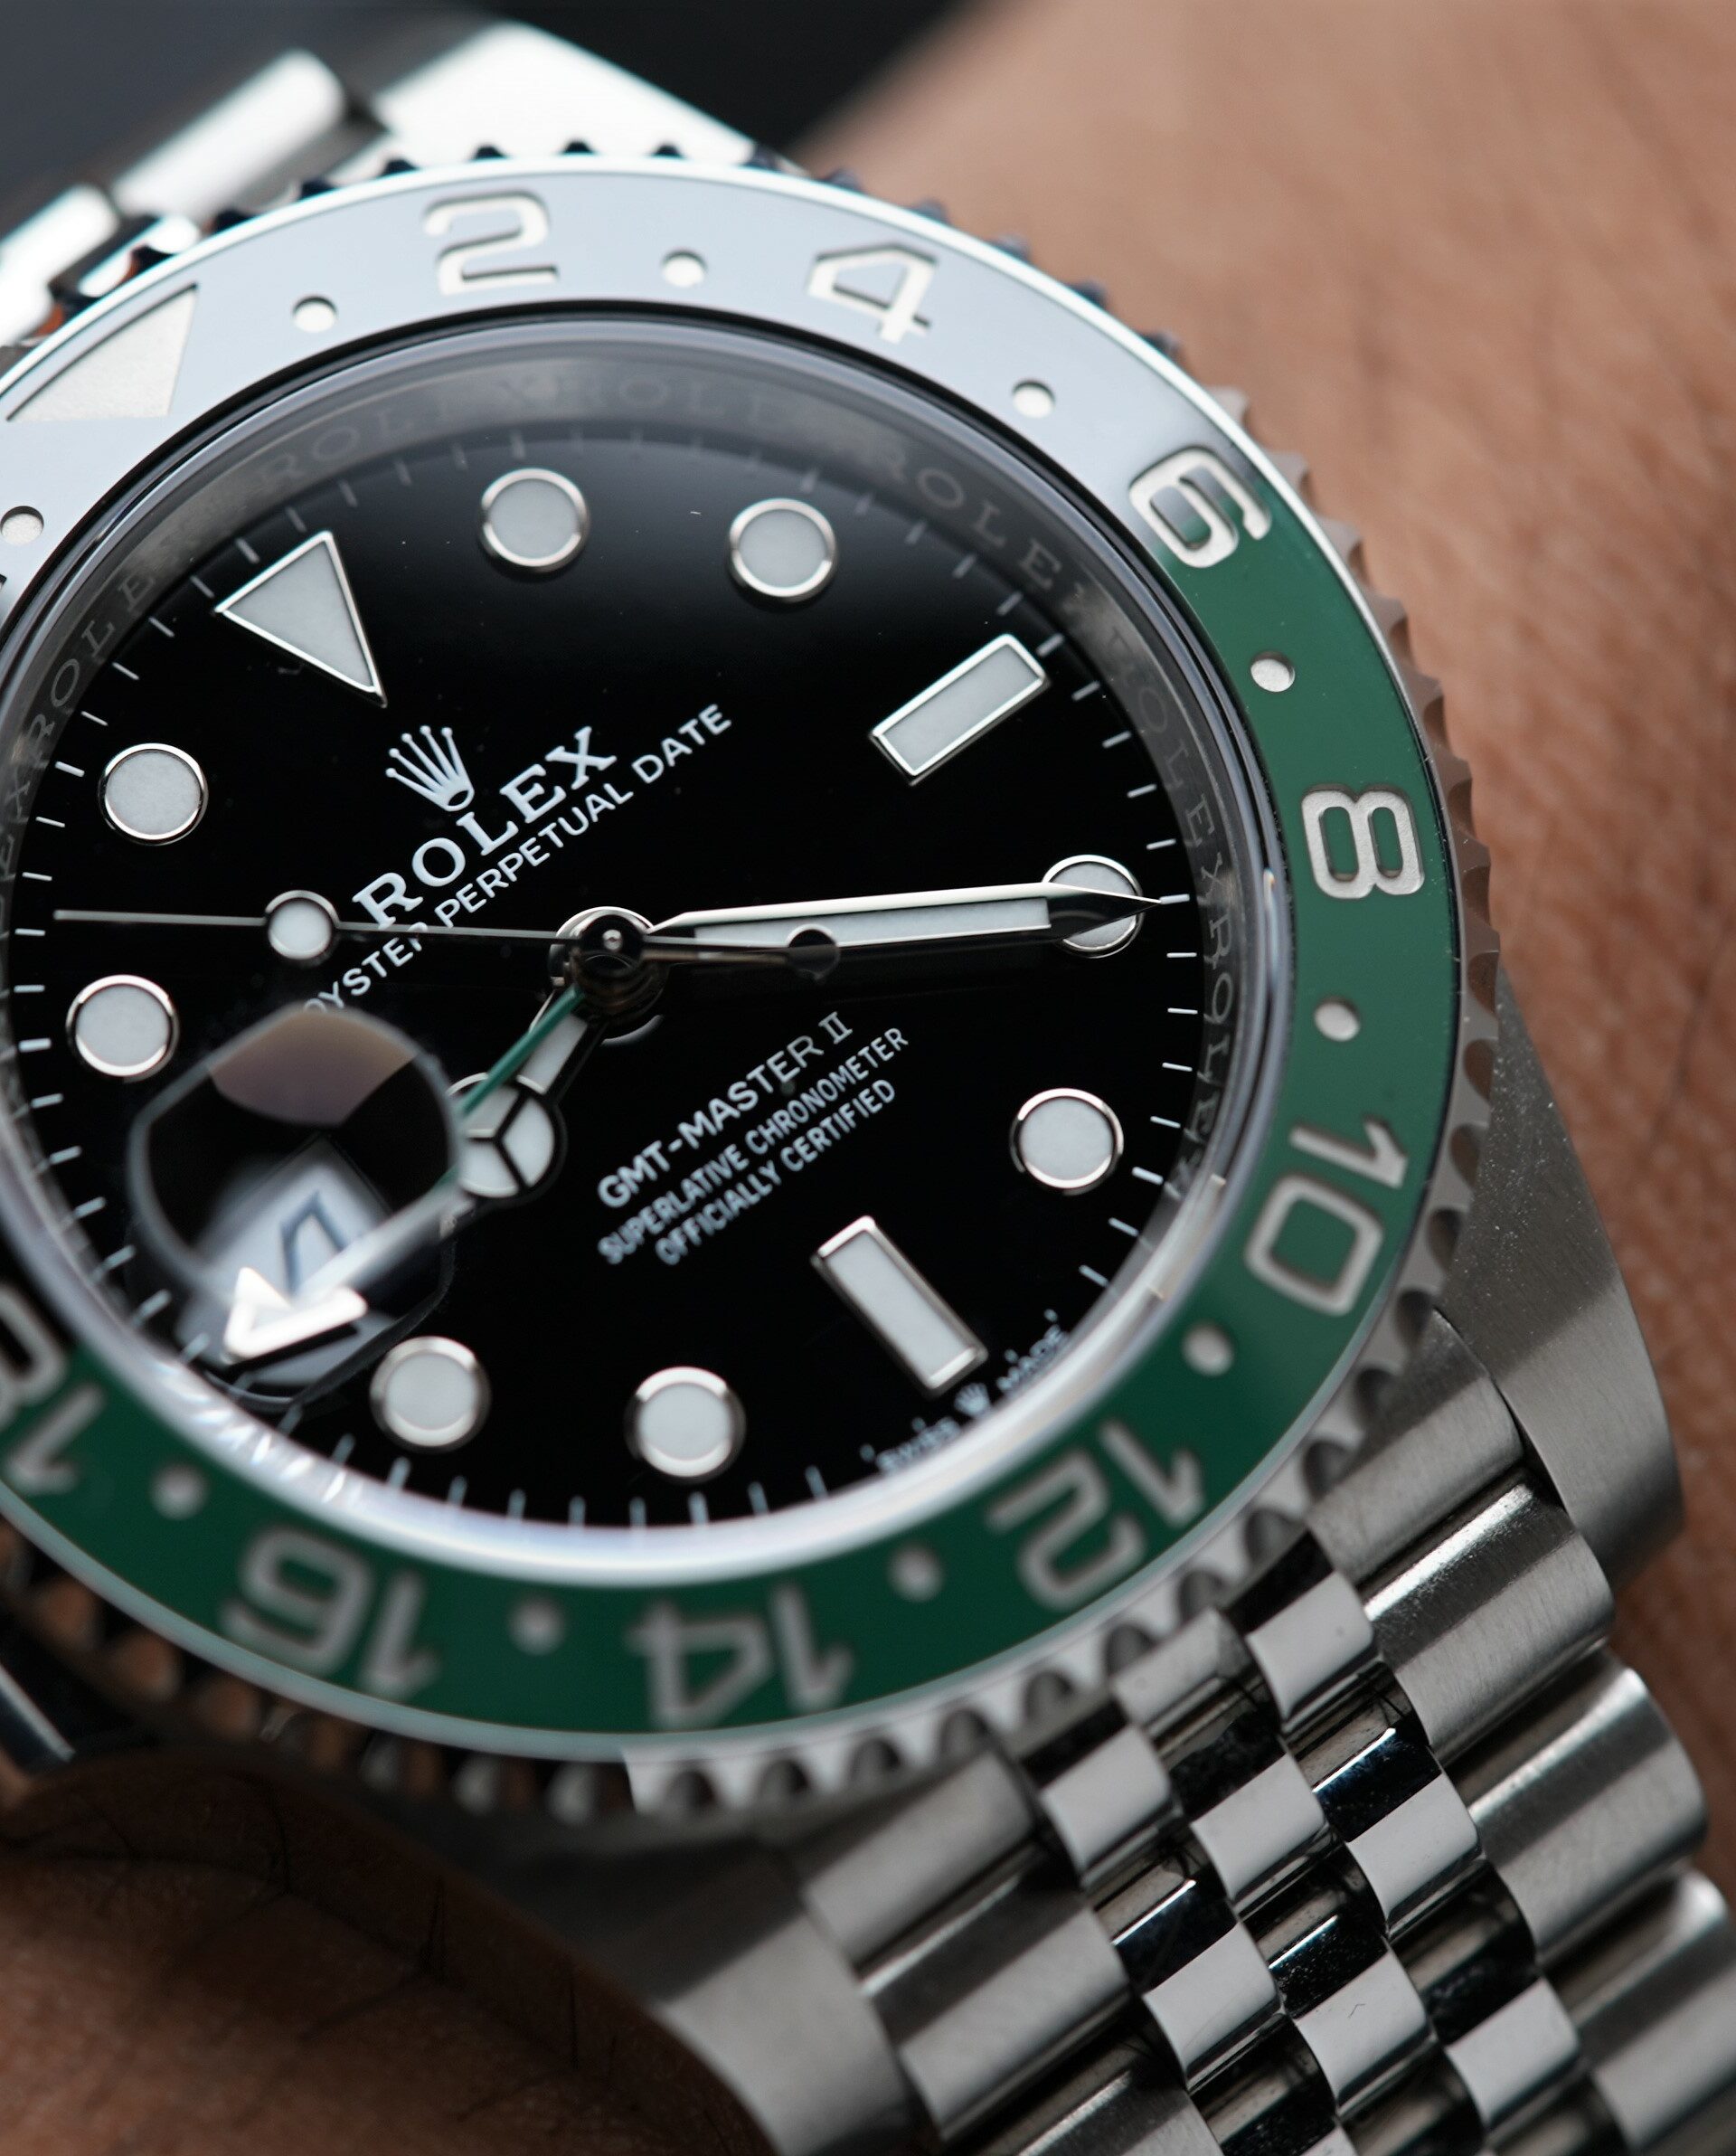 Rolex GMT-Master II 126720VTNR wristwatch featured on the wrist.